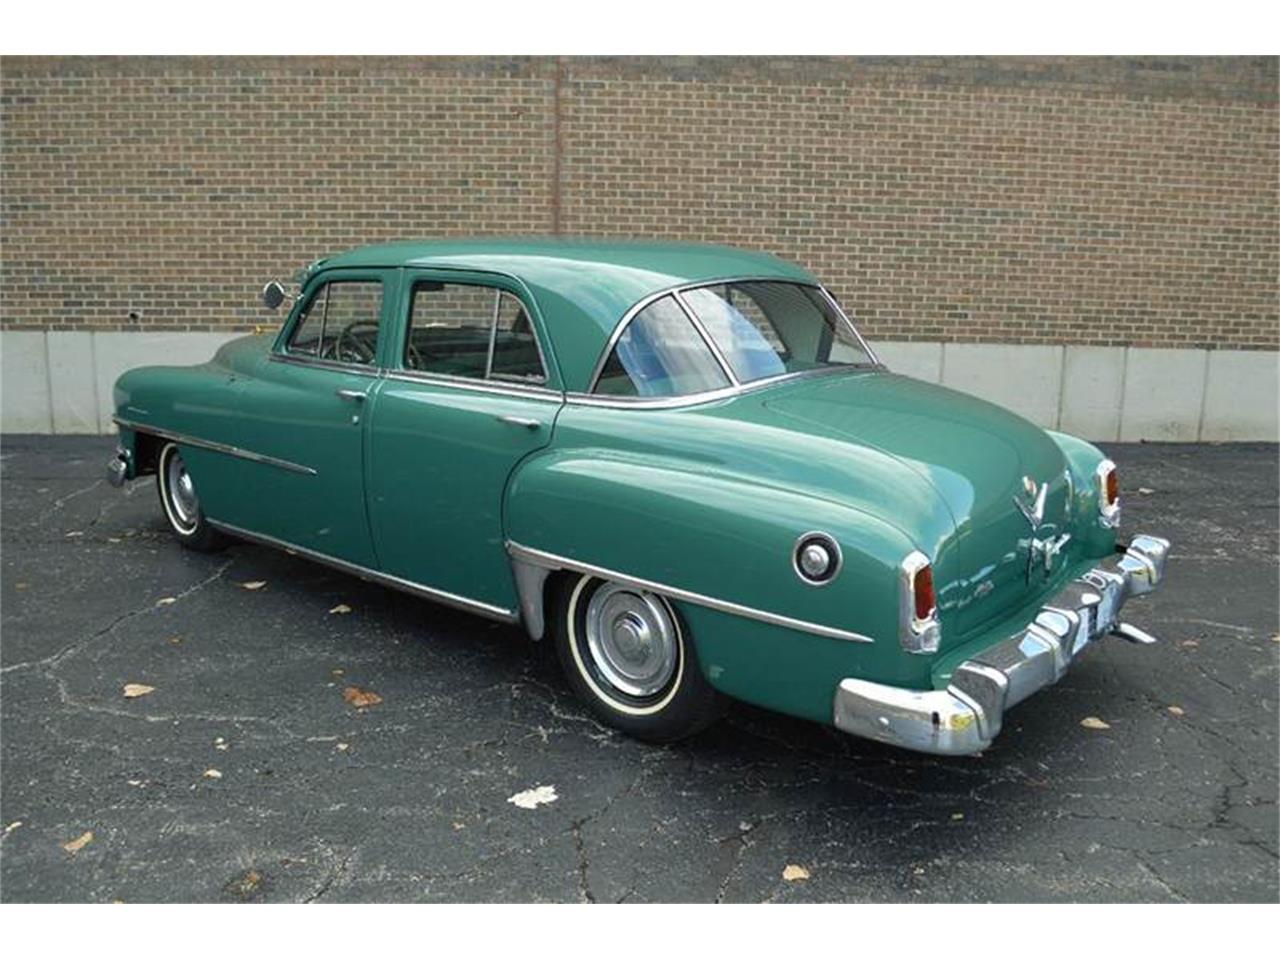 Саратога 4. 1952 Chrysler Saratoga. 1950 Chrysler Saratoga. Chrysler Saratoga 1960. '54 Chrysler Windsor Deluxe sedan.